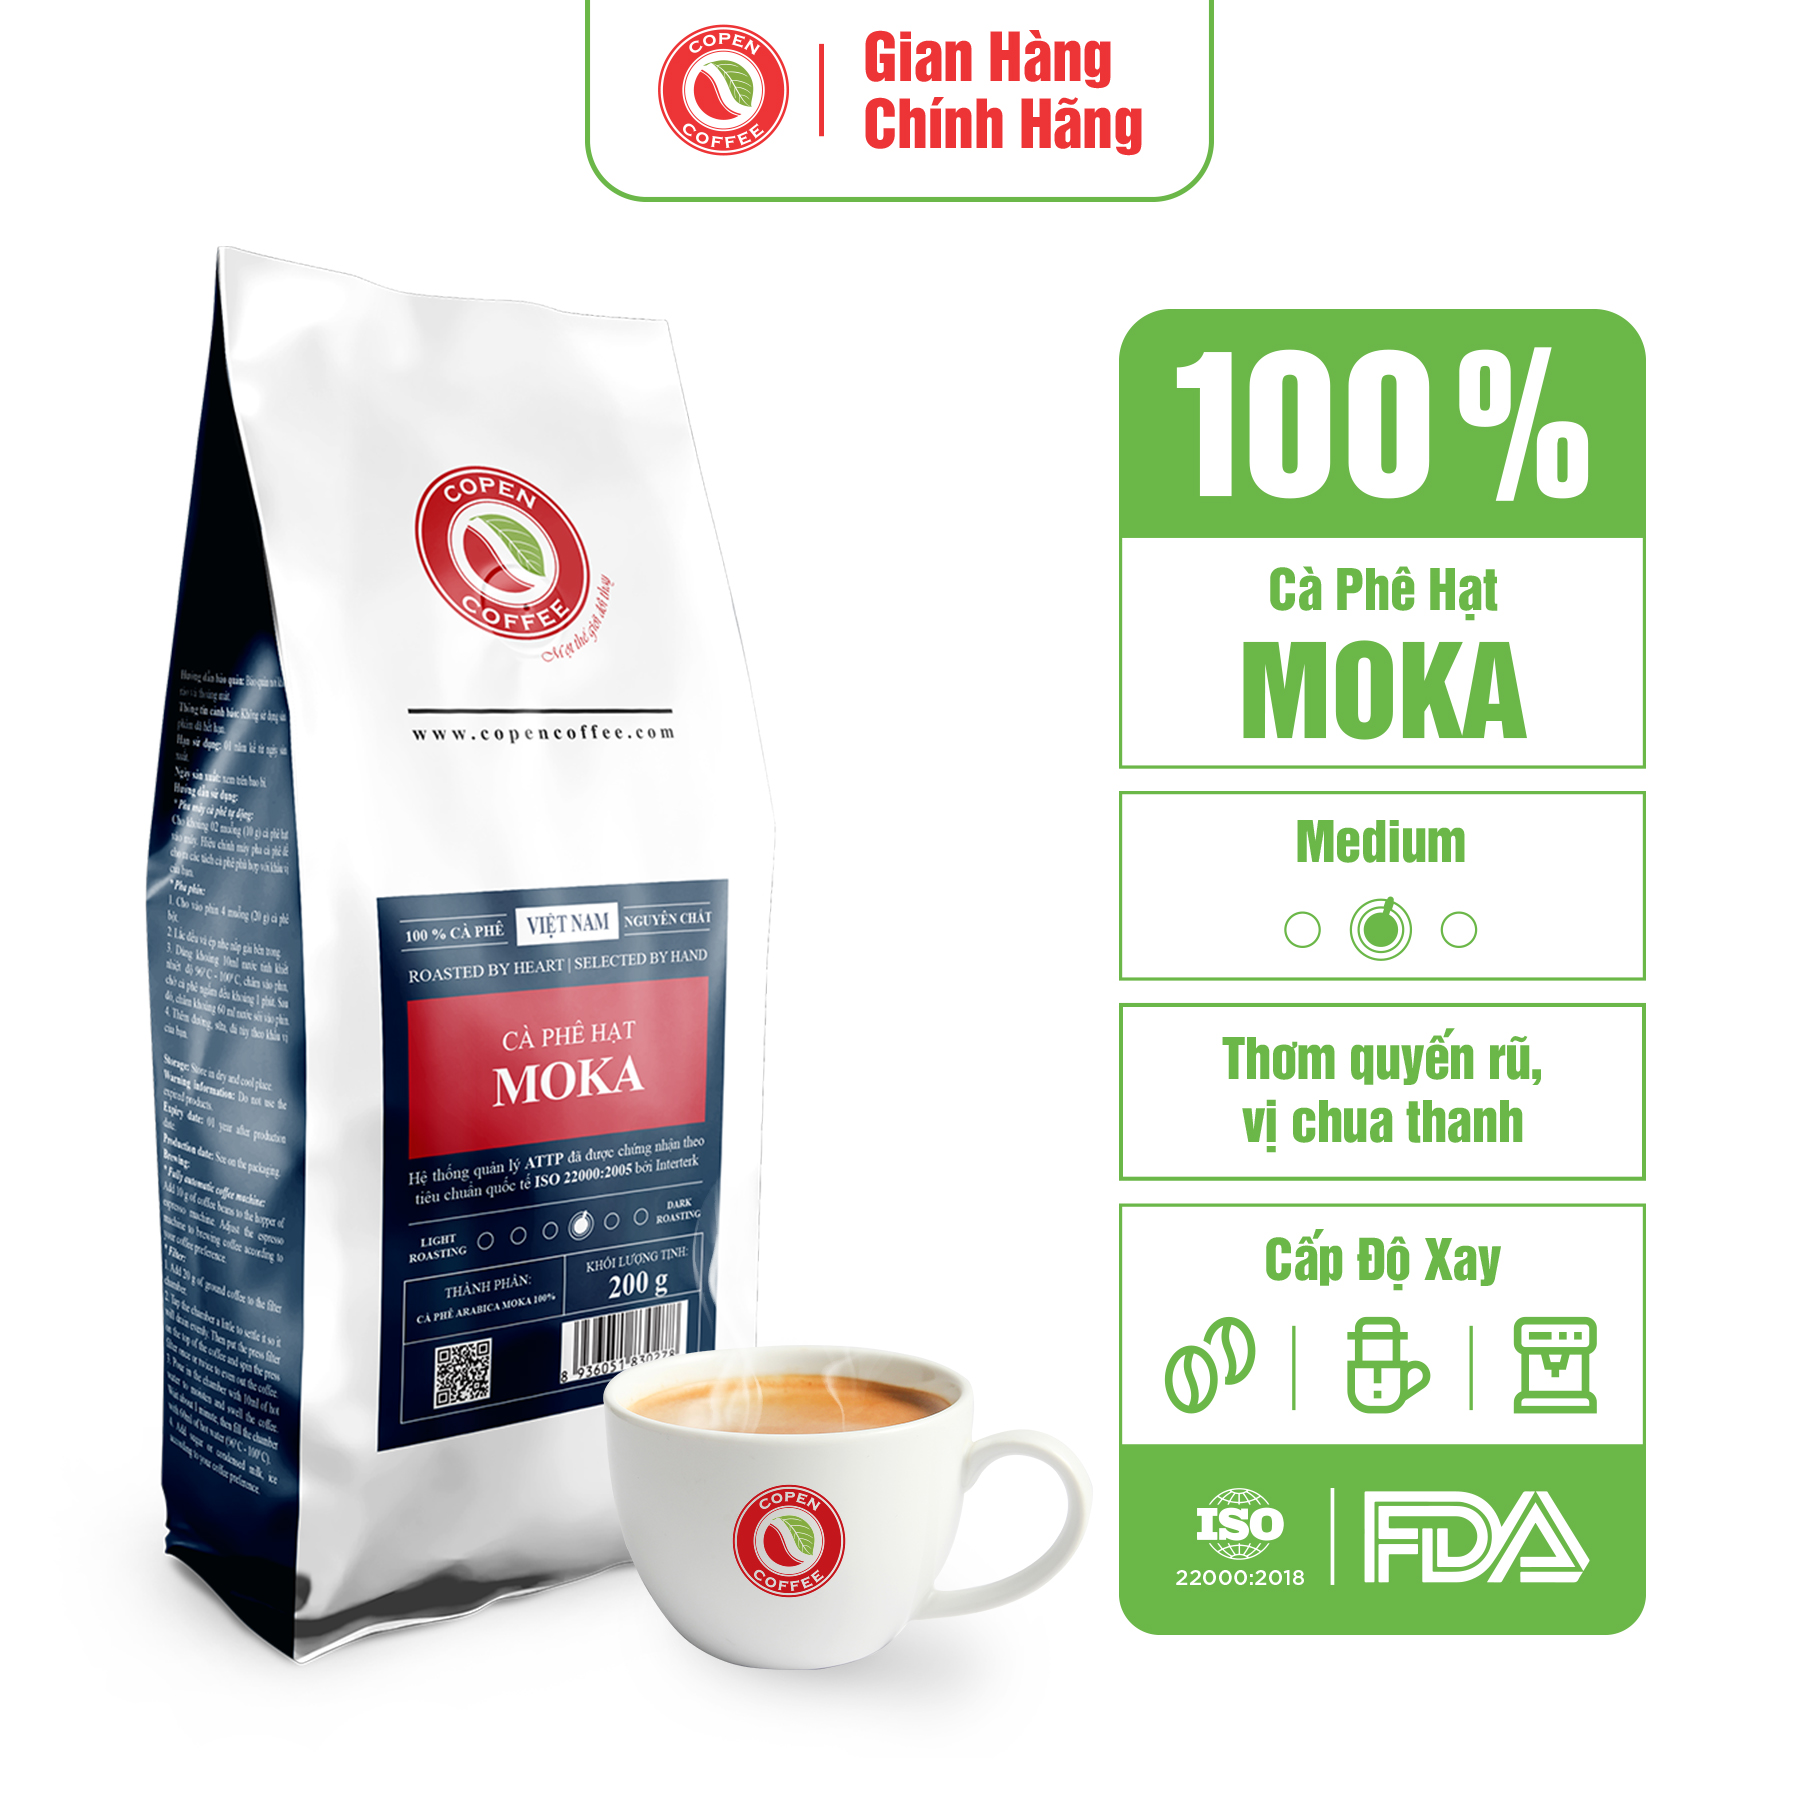 Cà phê hạt Moka rang mộc Copen Coffee, pha espresso, xay pha phin